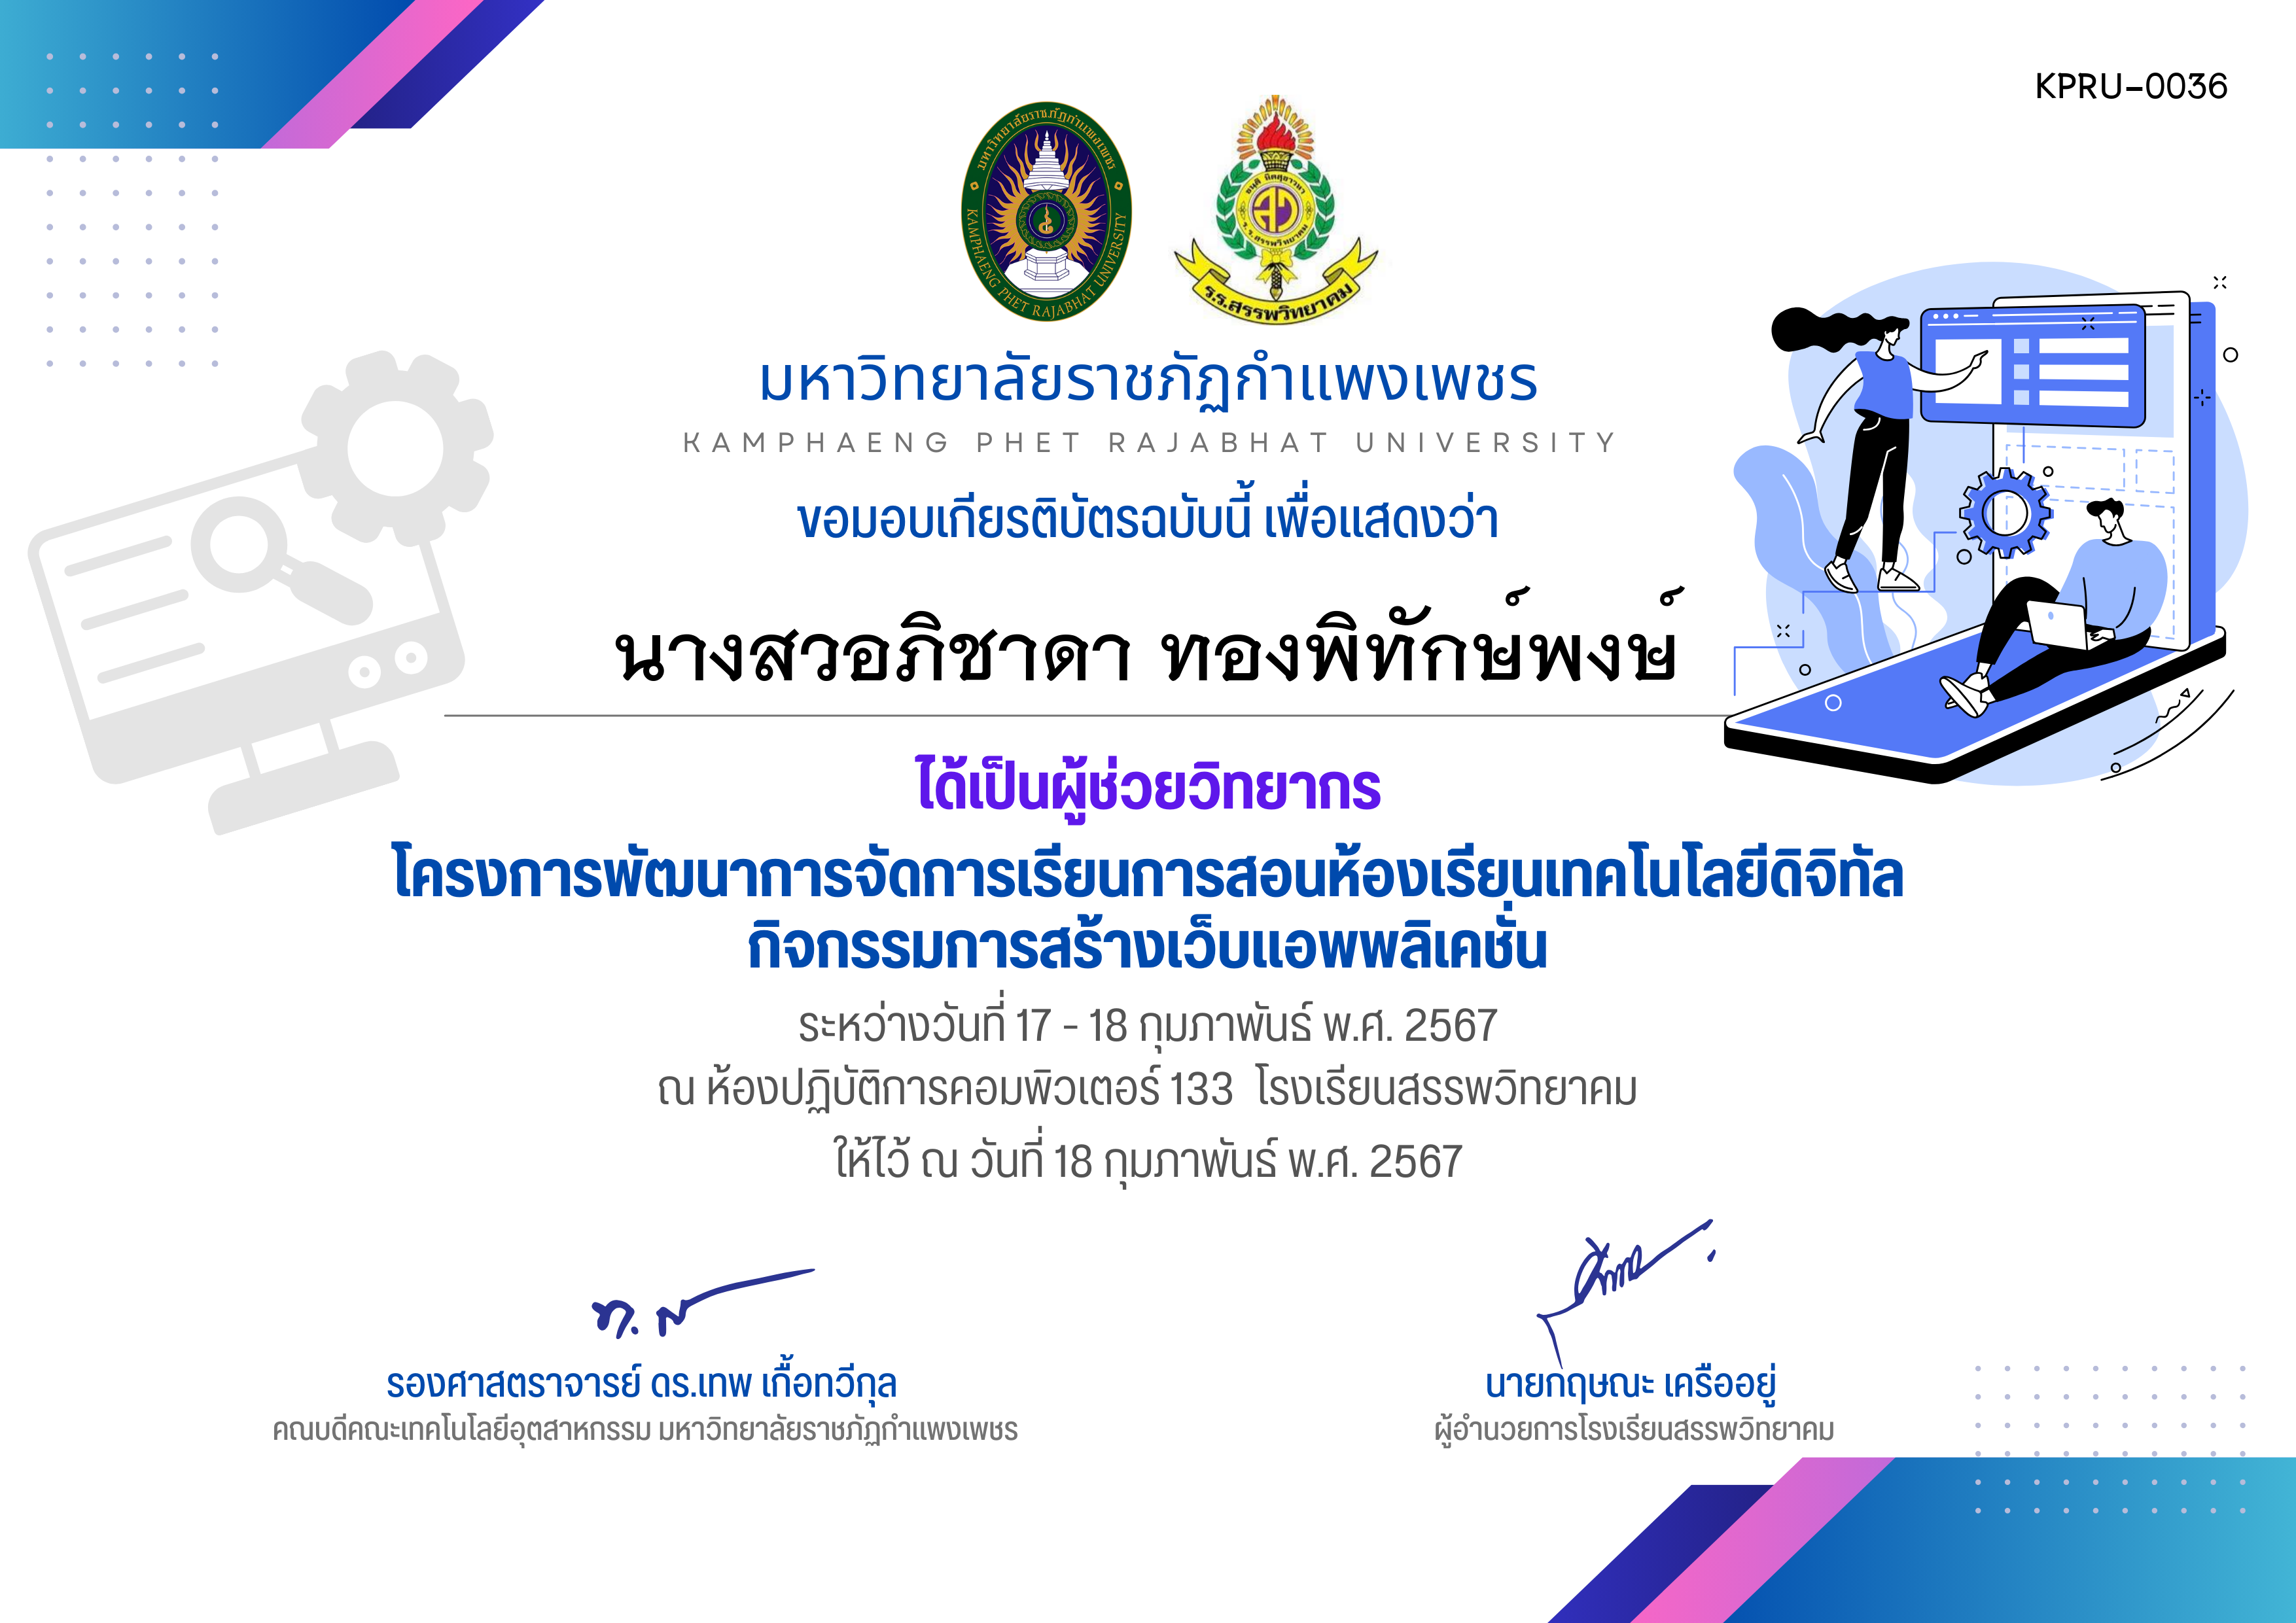 เกียรติบัตร กิจกรรมการสร้างเว็บแอพพลิเคชั่น (ผู้เข้าร่วม) - 17 - 18 กุมภาพันธ์ พ.ศ. 2567-โรงเรียนสรรพวิทยาคม ของ นางสวอภิชาดา ทองพิทักษ์พงษ์